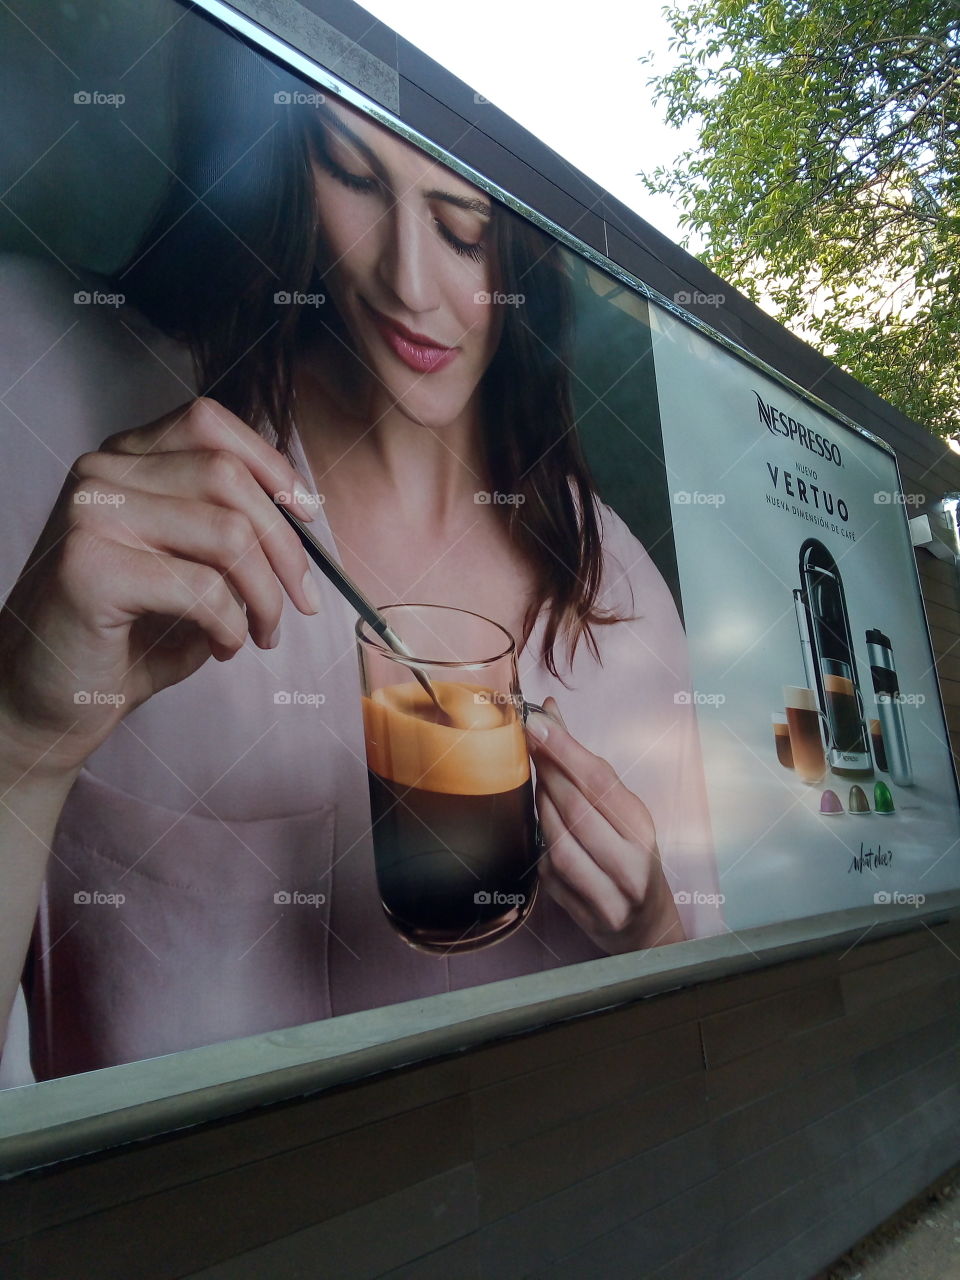 anuncio en pared de publicidad donde se aprecia una mujer tomando café.